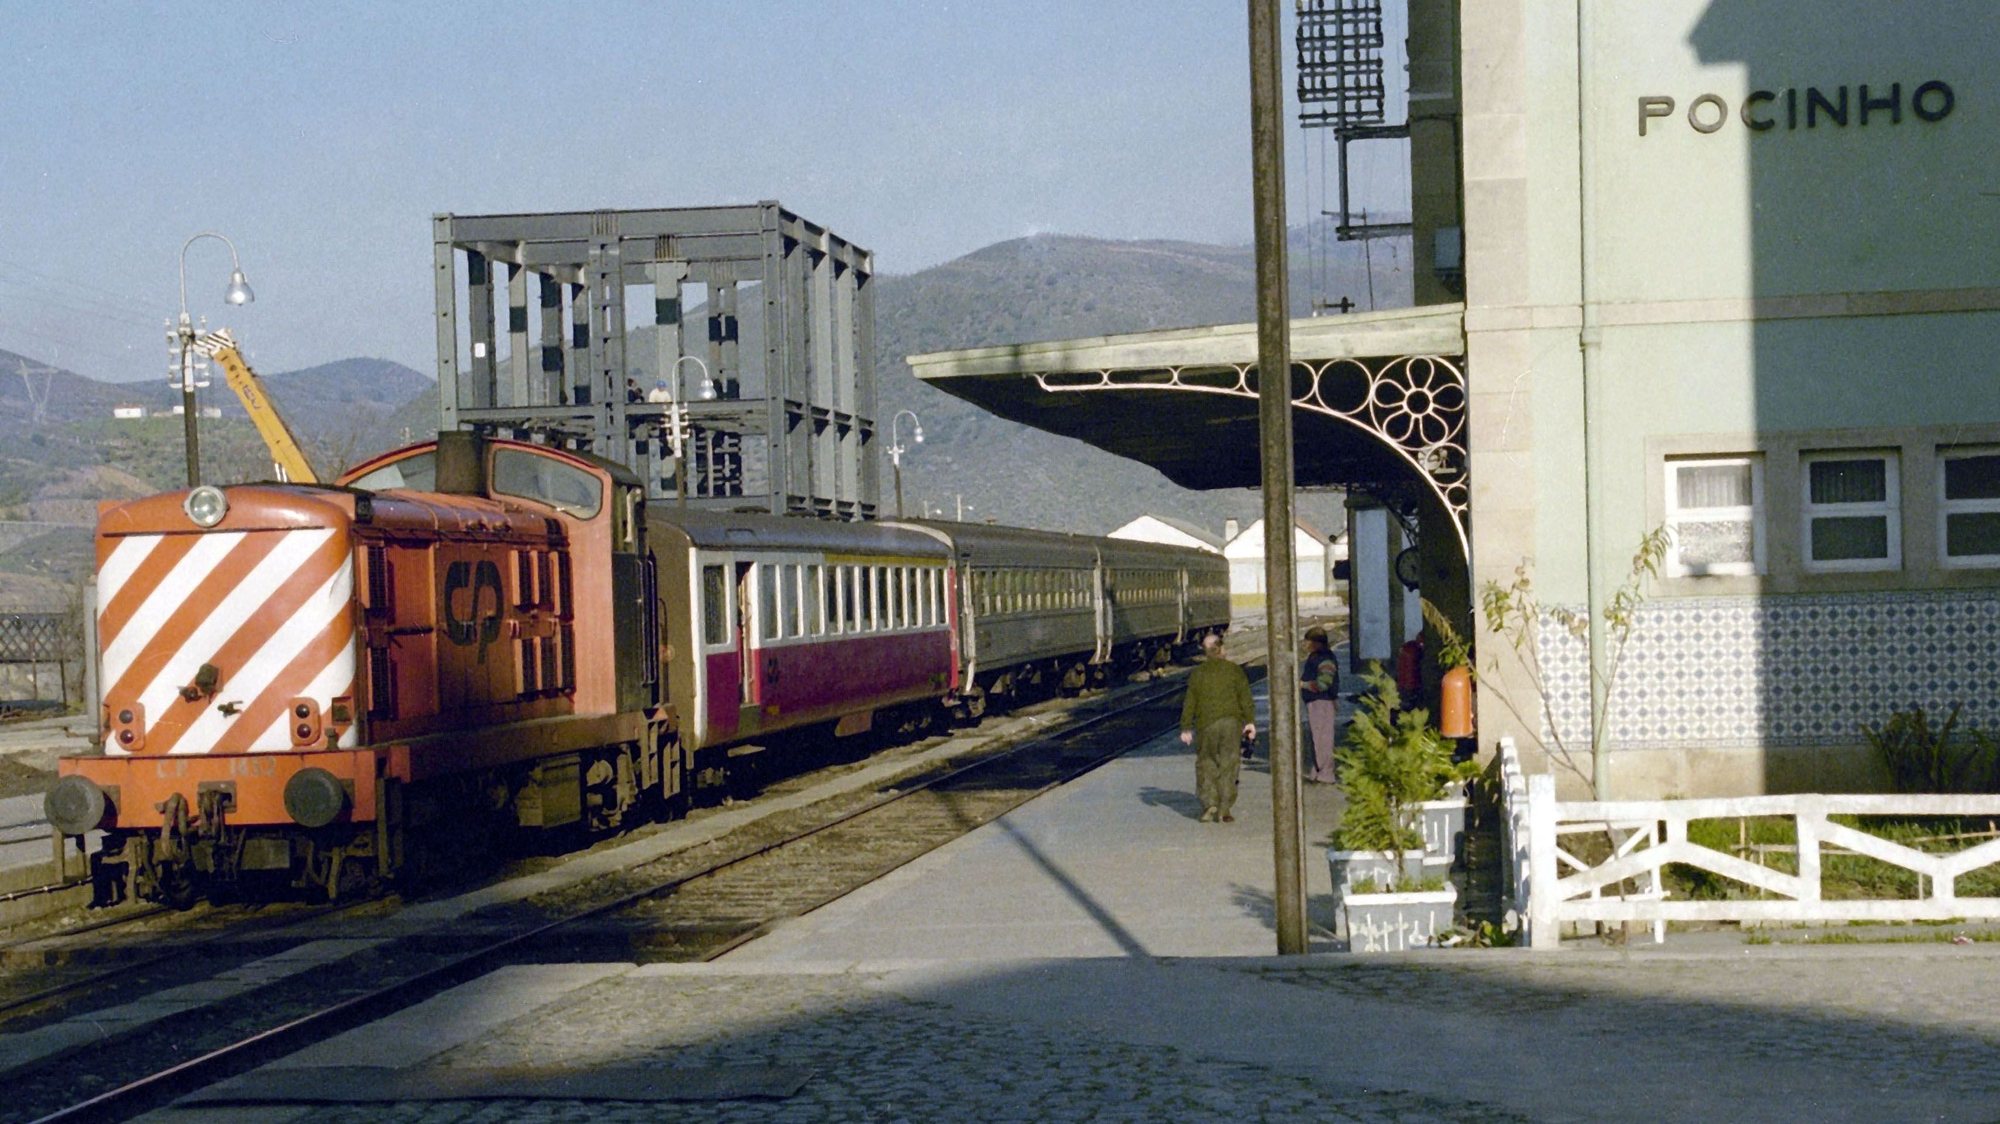 Um comboio de passageiros passa pela estação ferroviária do Pocinho, no concelho de Vila Nova de Foz Côa a 3 de fevereiro de 1995.

Francisco Neves / Lusa